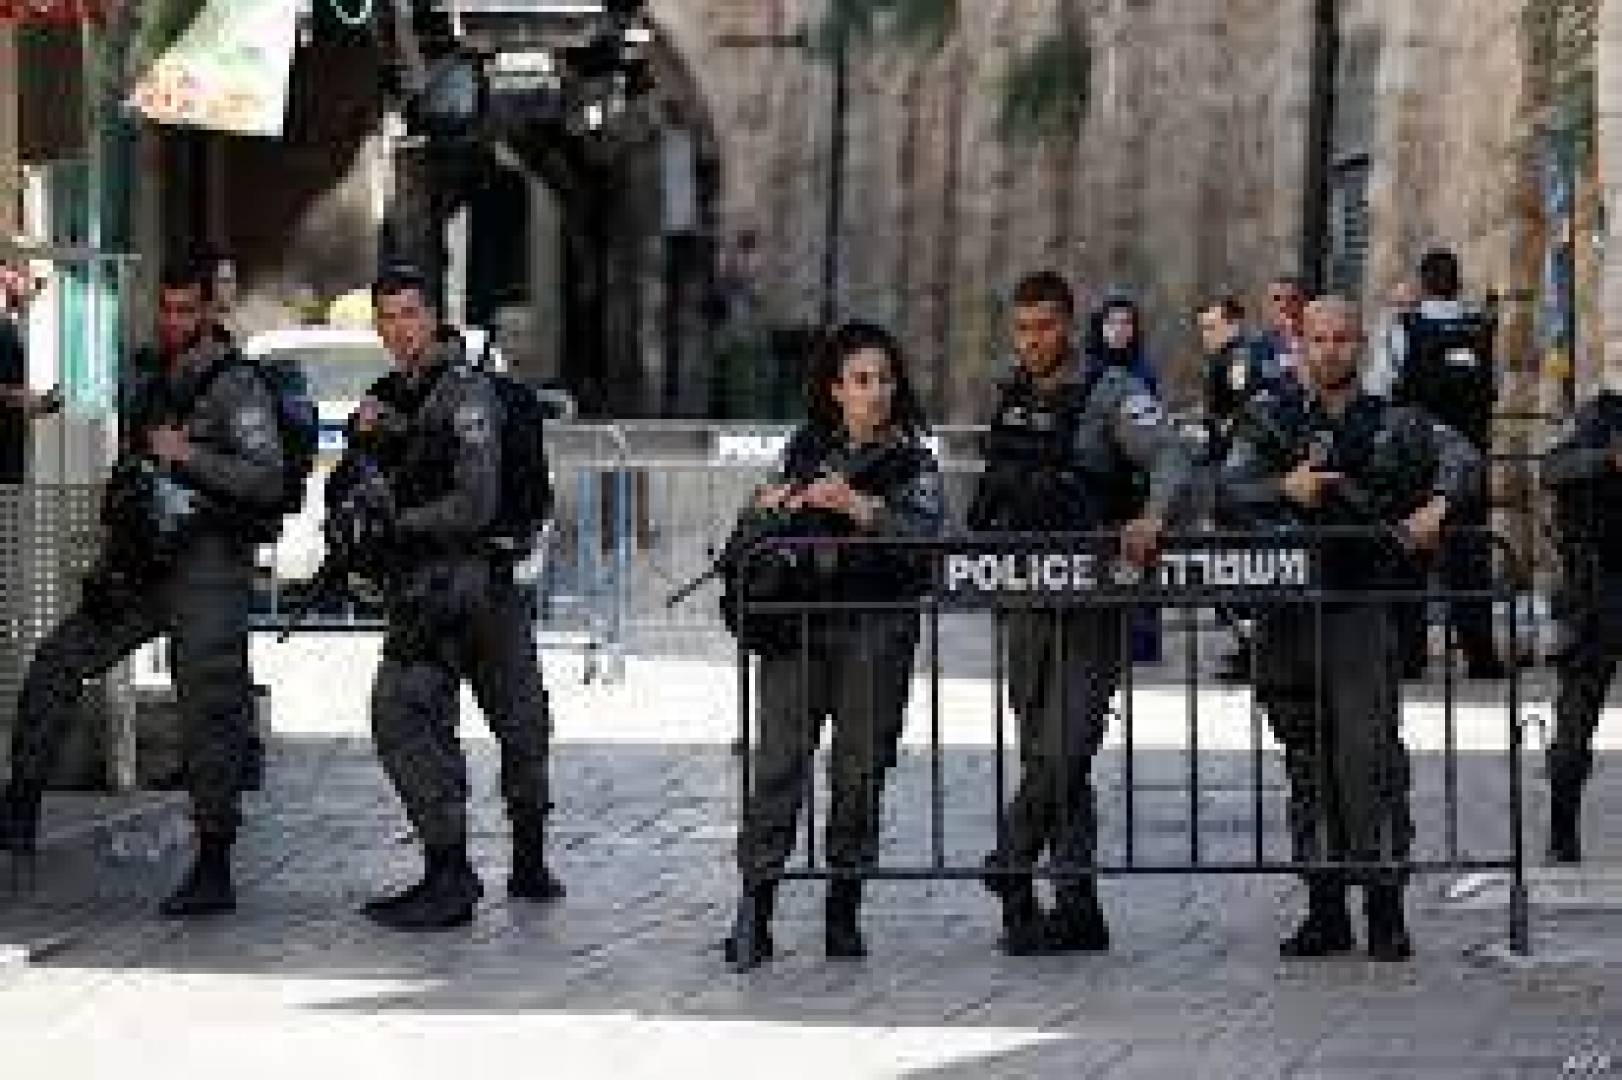 الآلاف من شرطة الاحتلال يستعدون لتأمين “مسيرة الأعلام” في القدس و طلبات بالتصديق على تنظيم مسيرات استفزازية مماثلة في الداخل الفلسطيني المحتل.